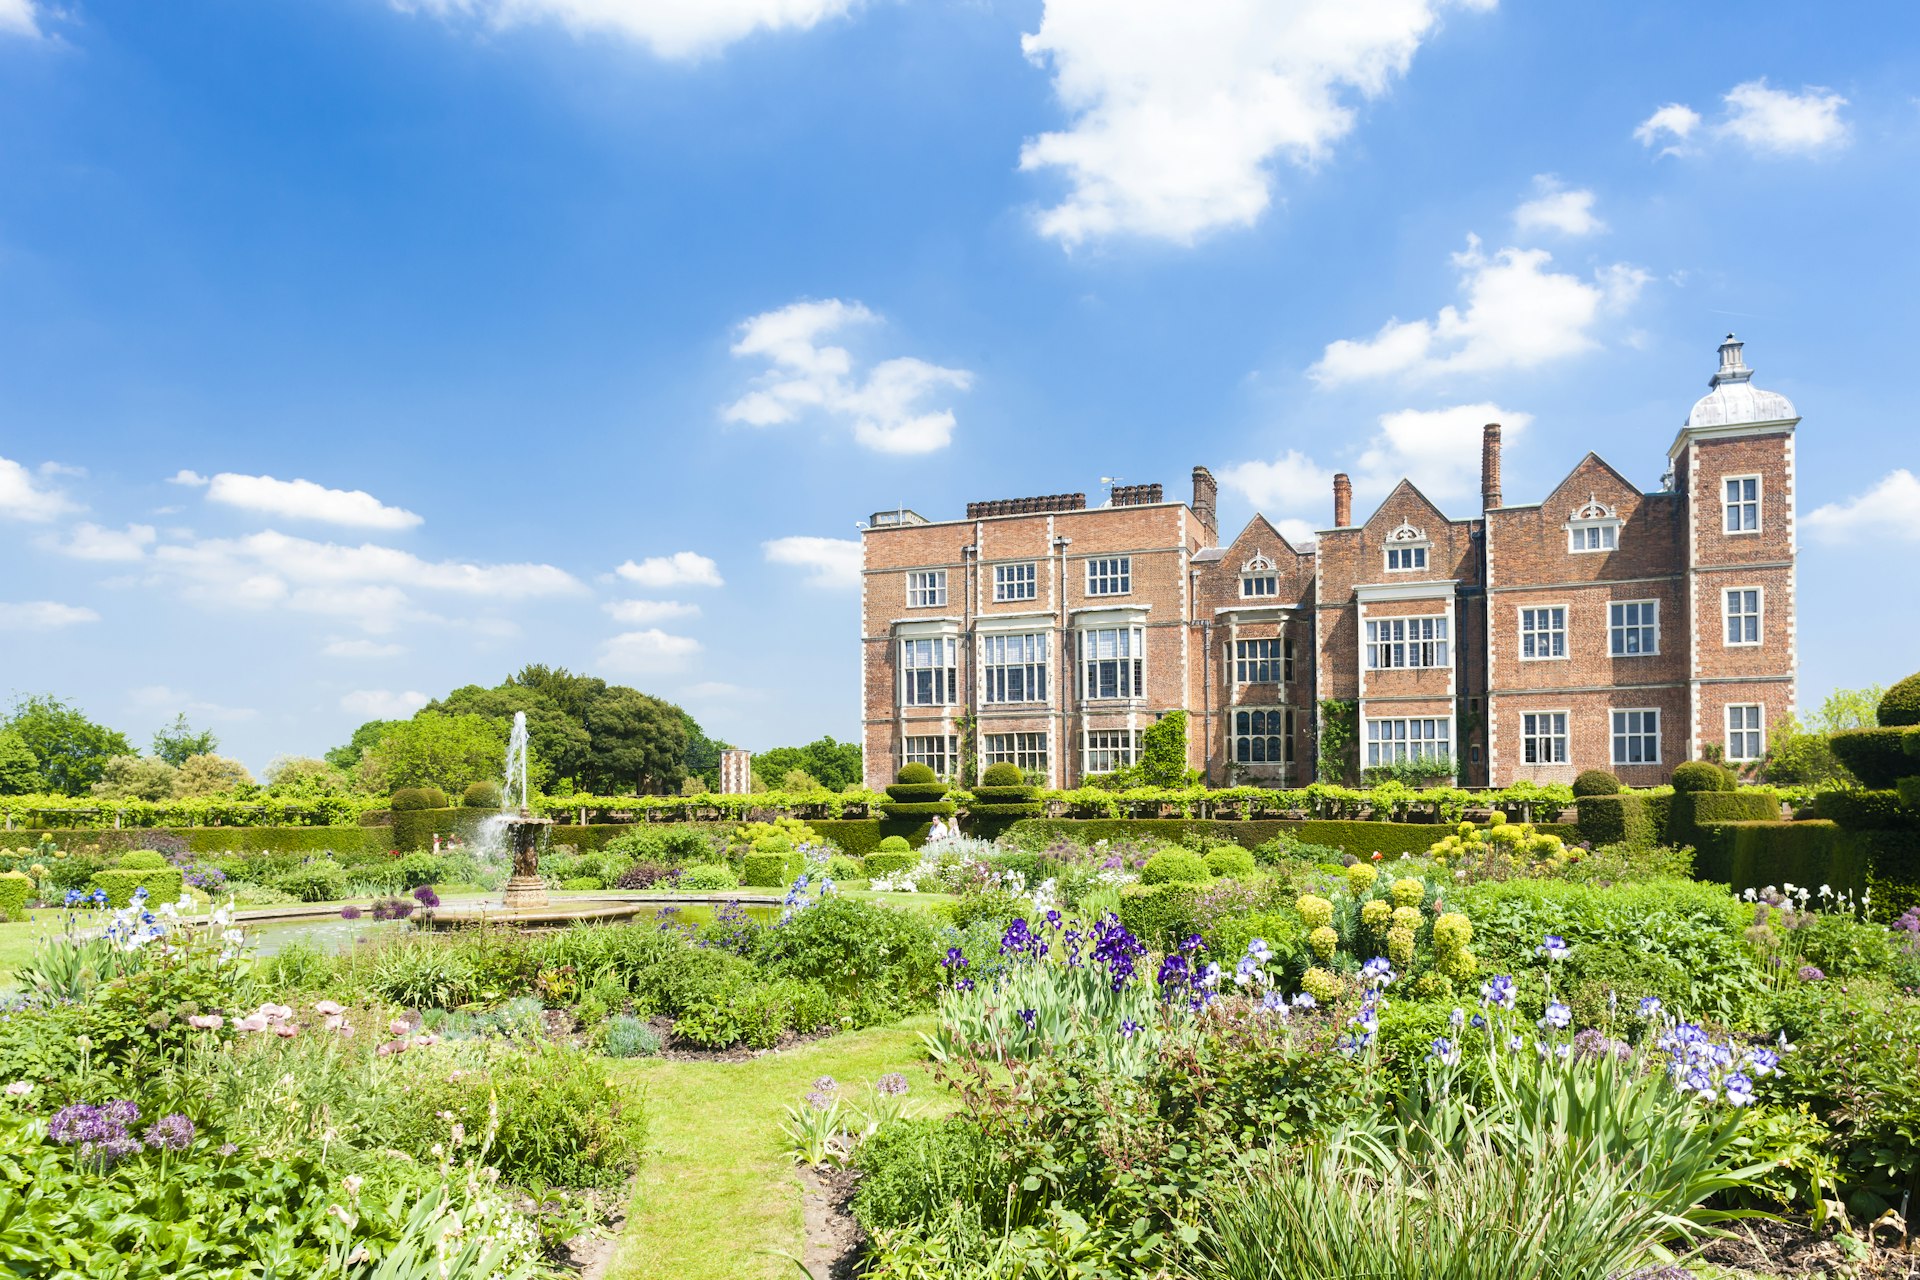 Hatfield House with garden, Hertfordshire, England. 